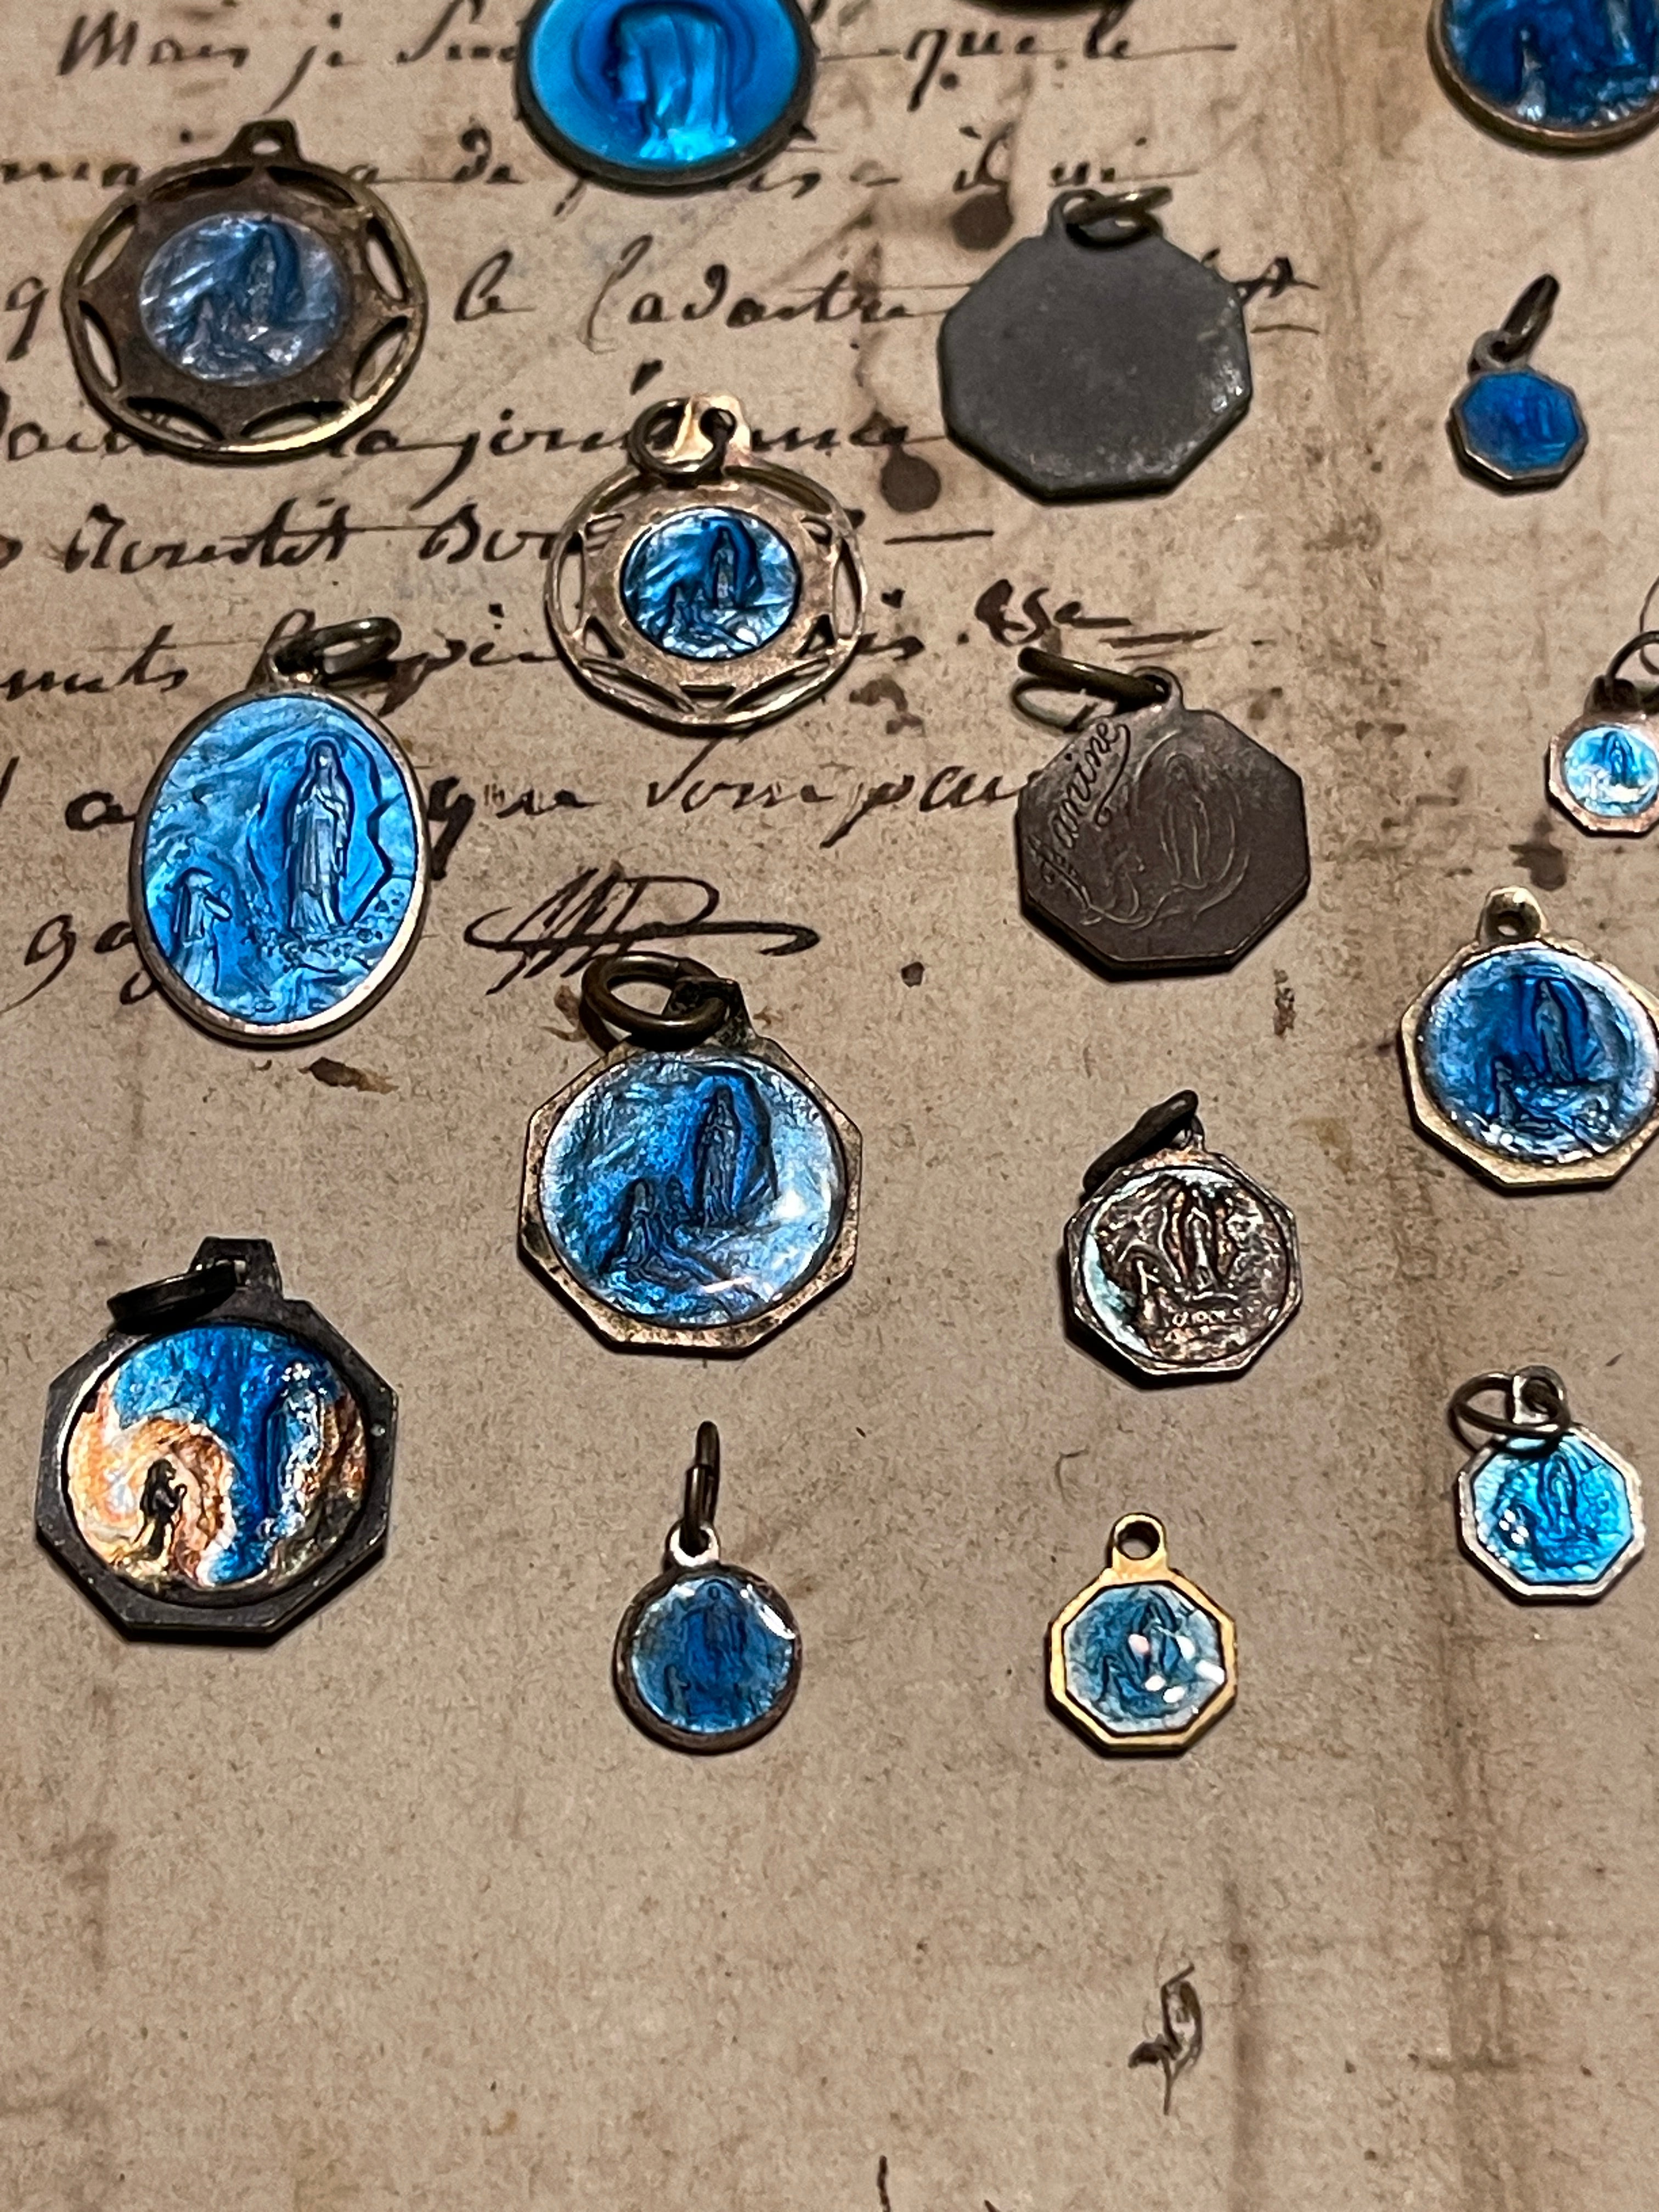 Original Vintage Blue Medals from France